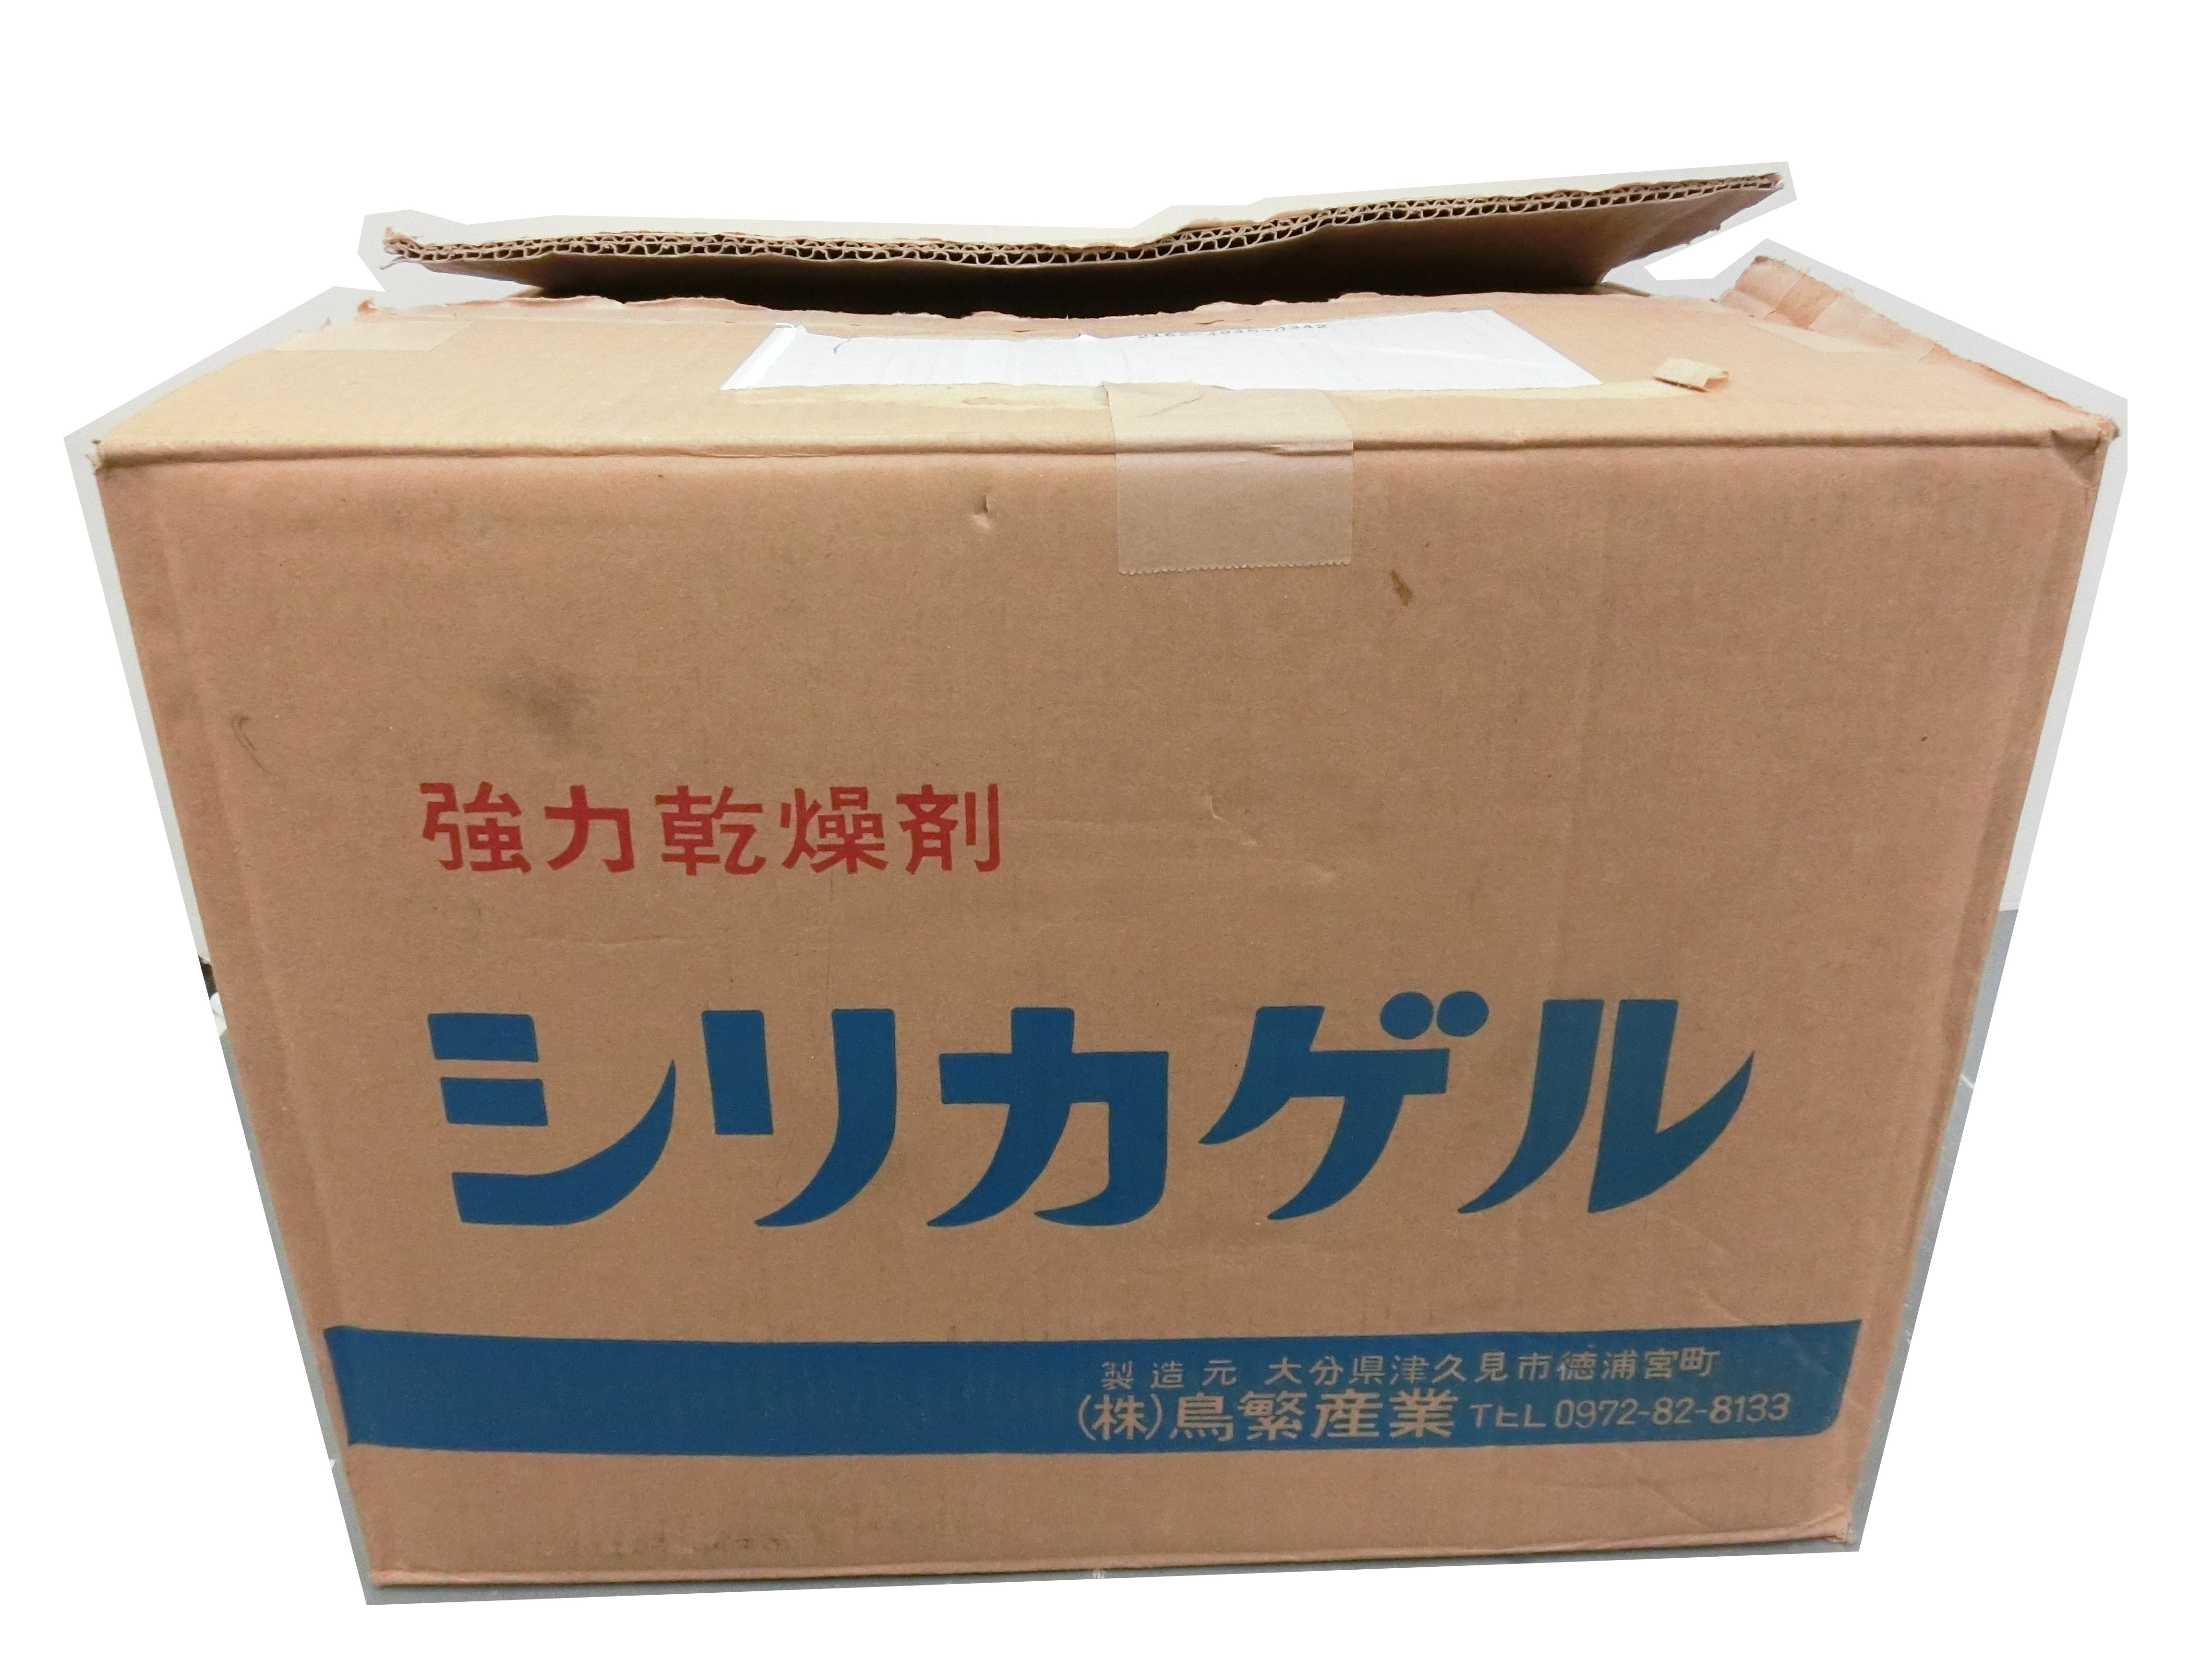 本日の段ボール 株 鳥繁産業 強力乾燥剤 シリカゲル 段ボール博物館 日本全国の段ボールを紹介